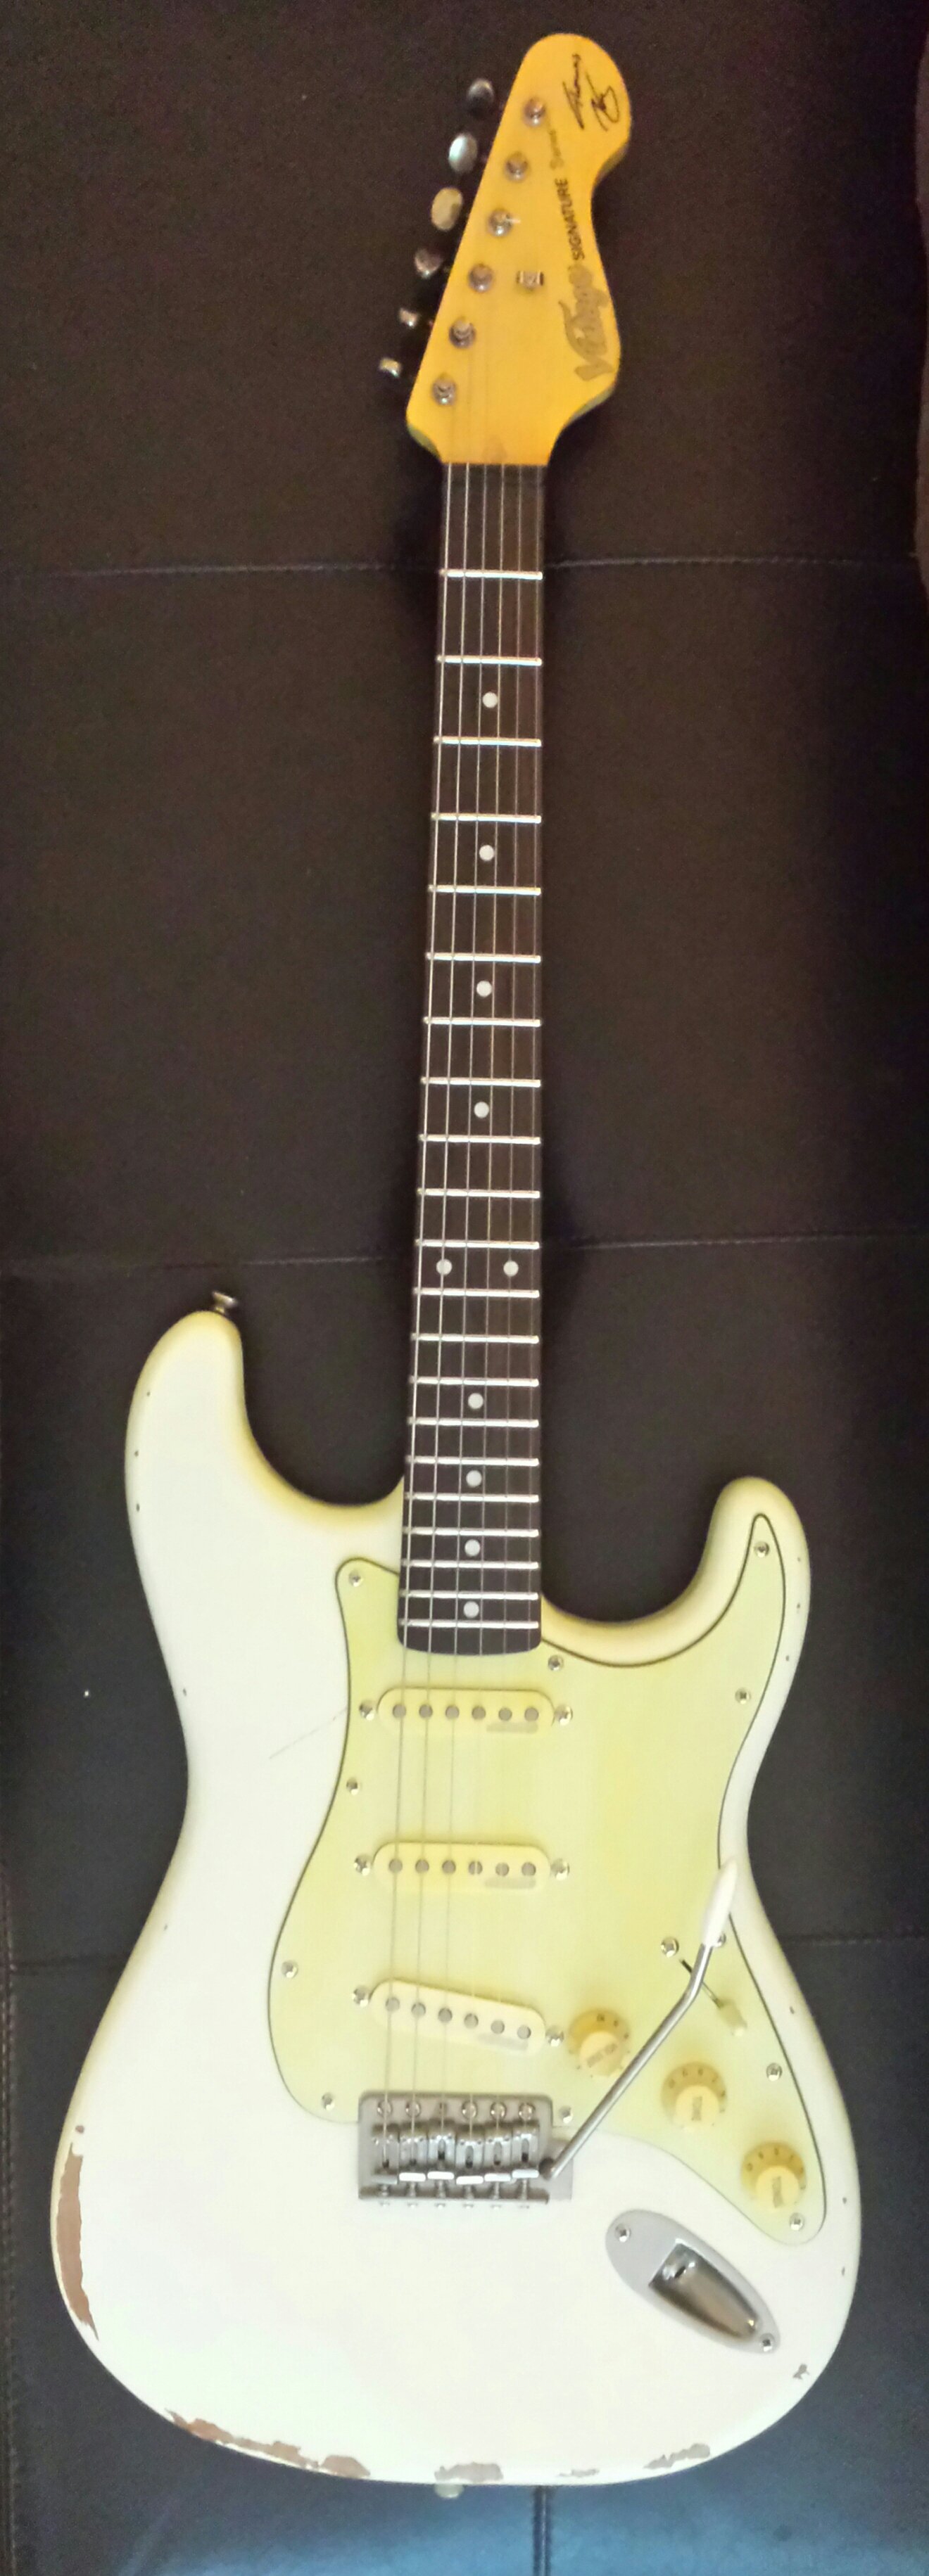 2017' Vintage V6-Stratocaster